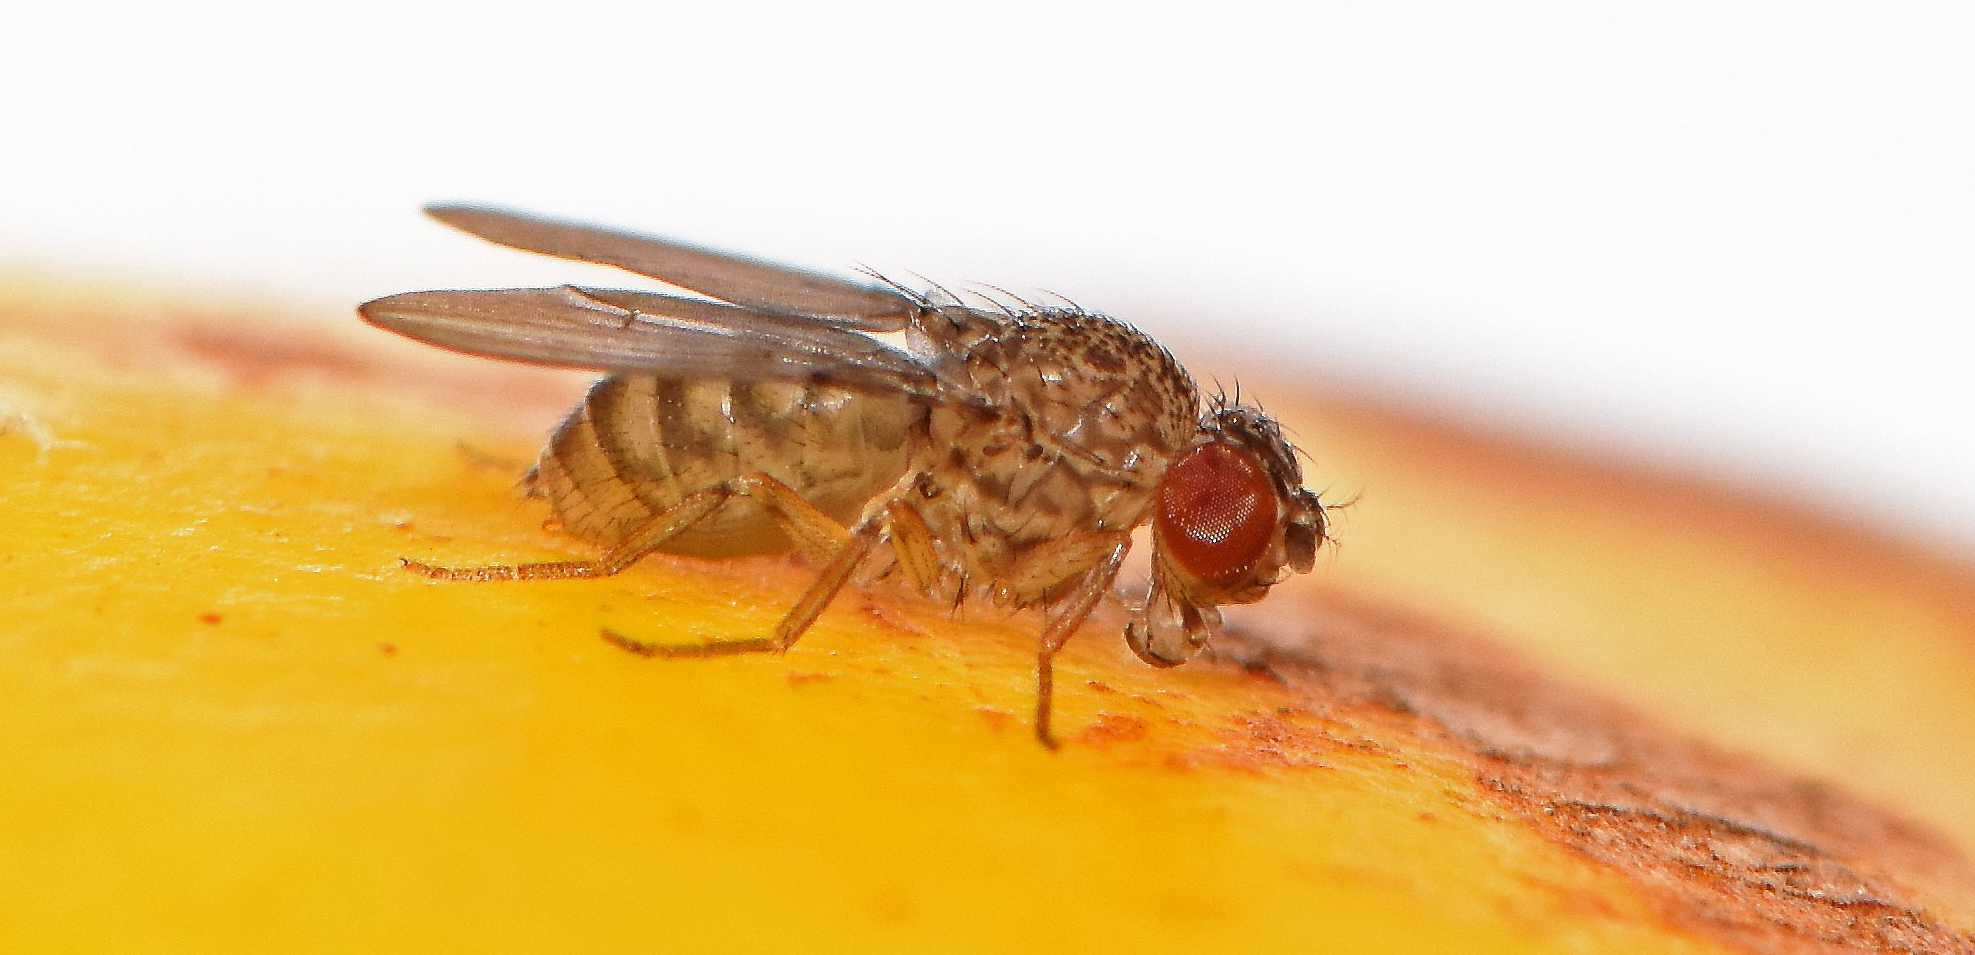 Ученые вывели мух, способных к «девственному размножению»